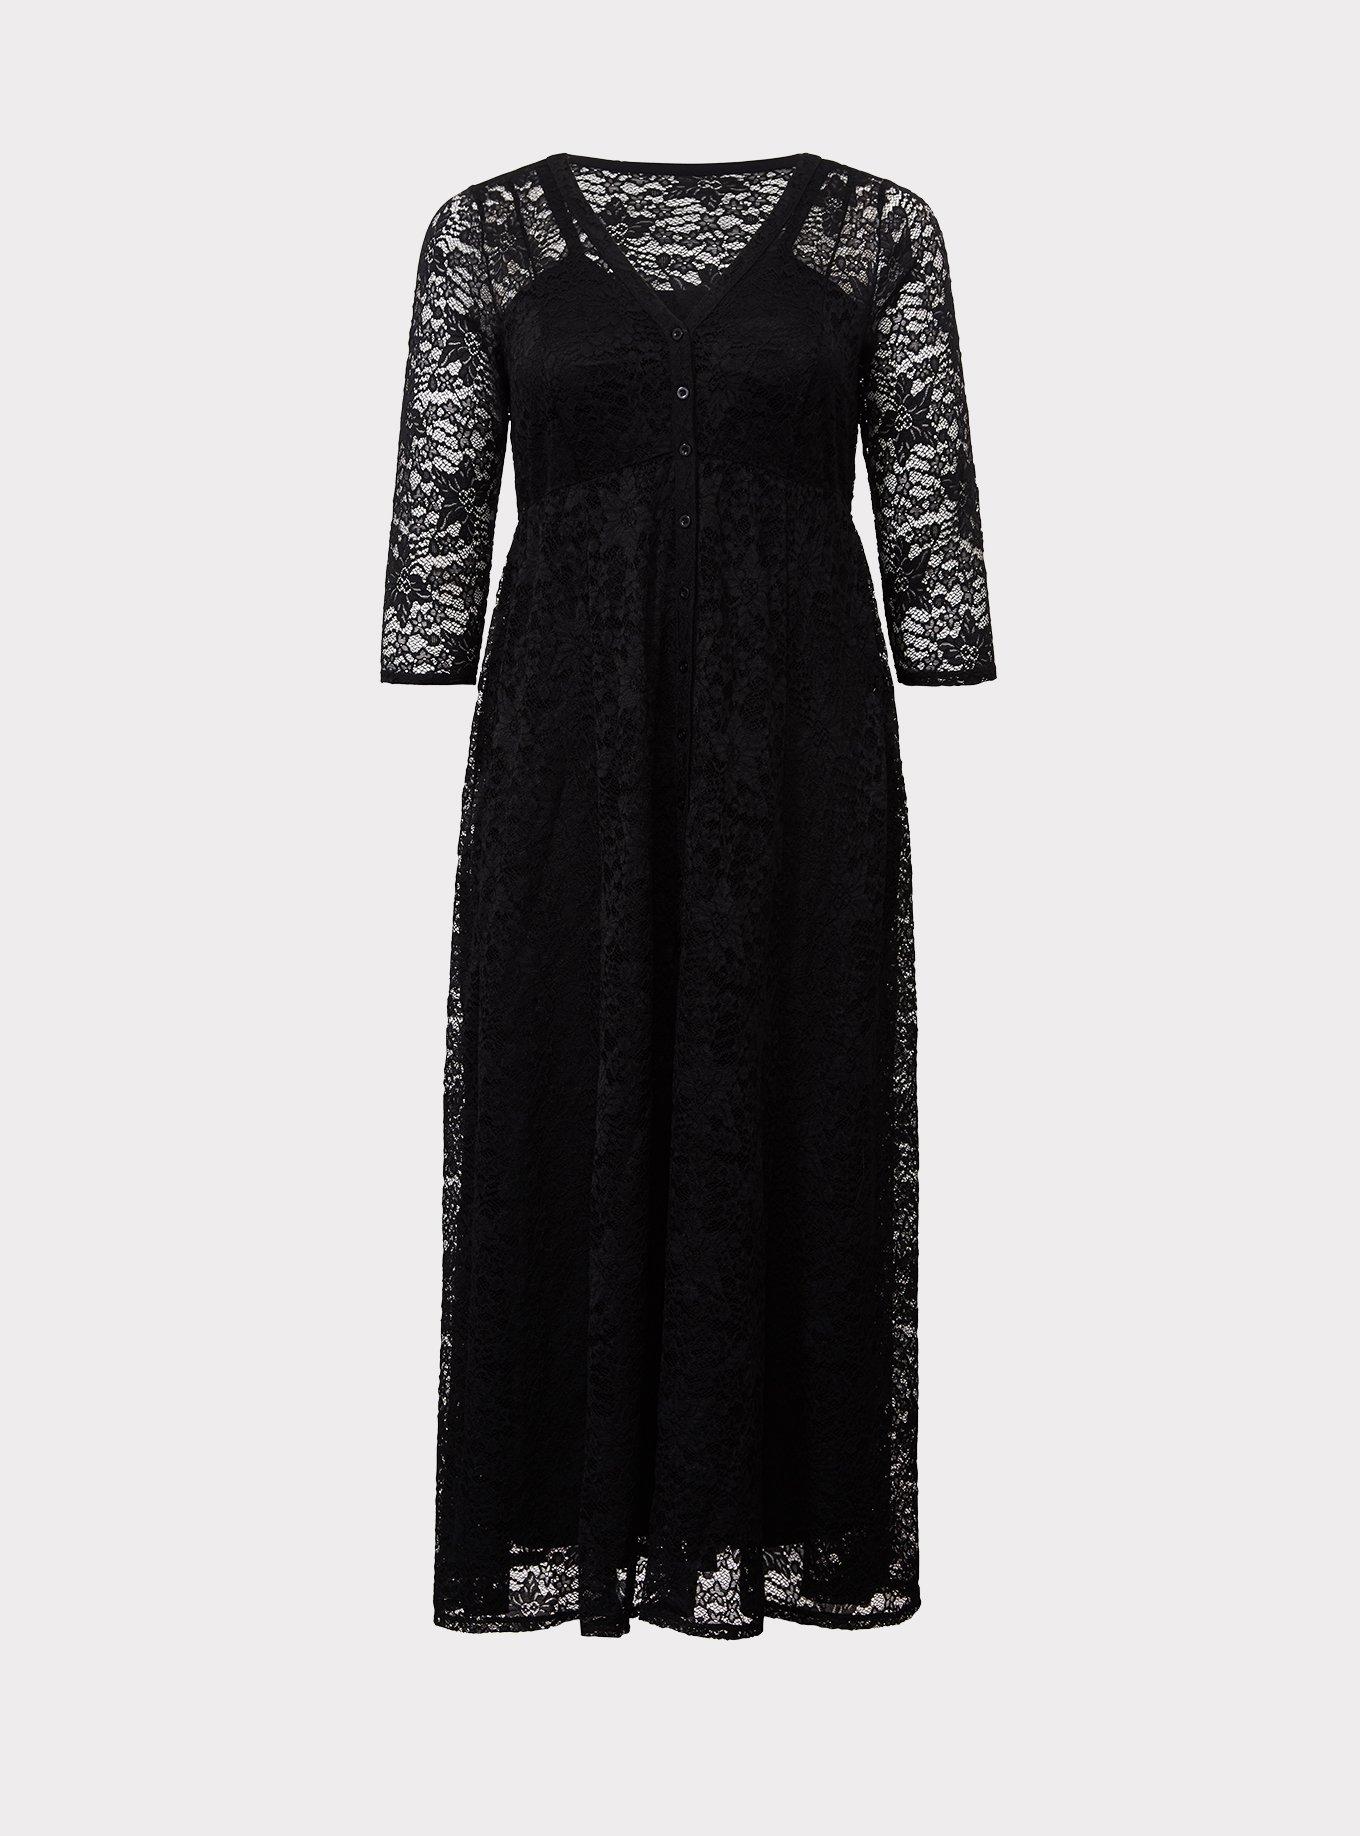 Plus Size - Black Lace Button Maxi Dress - Torrid